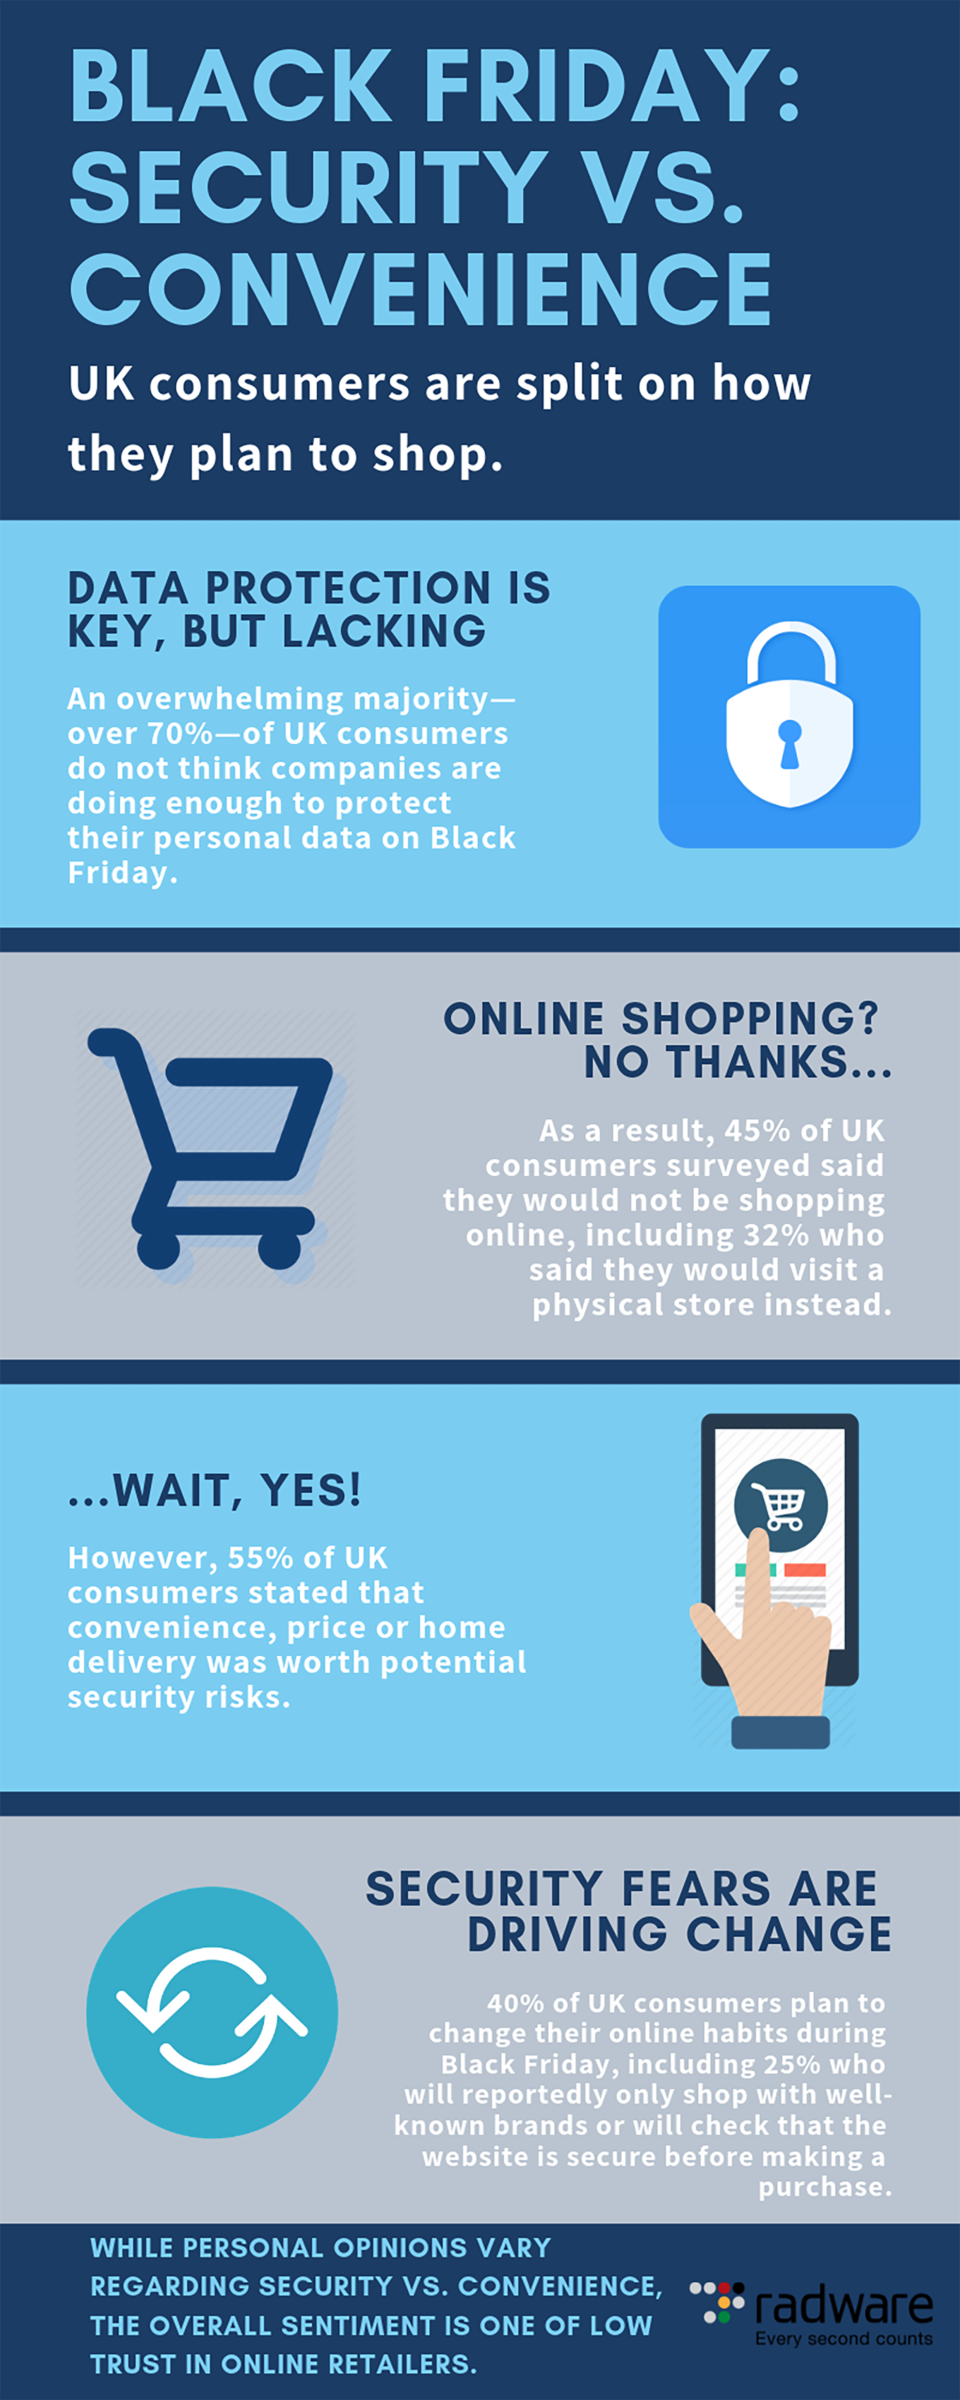 Hva er sikkerhetsrisikoen ved online shopping?